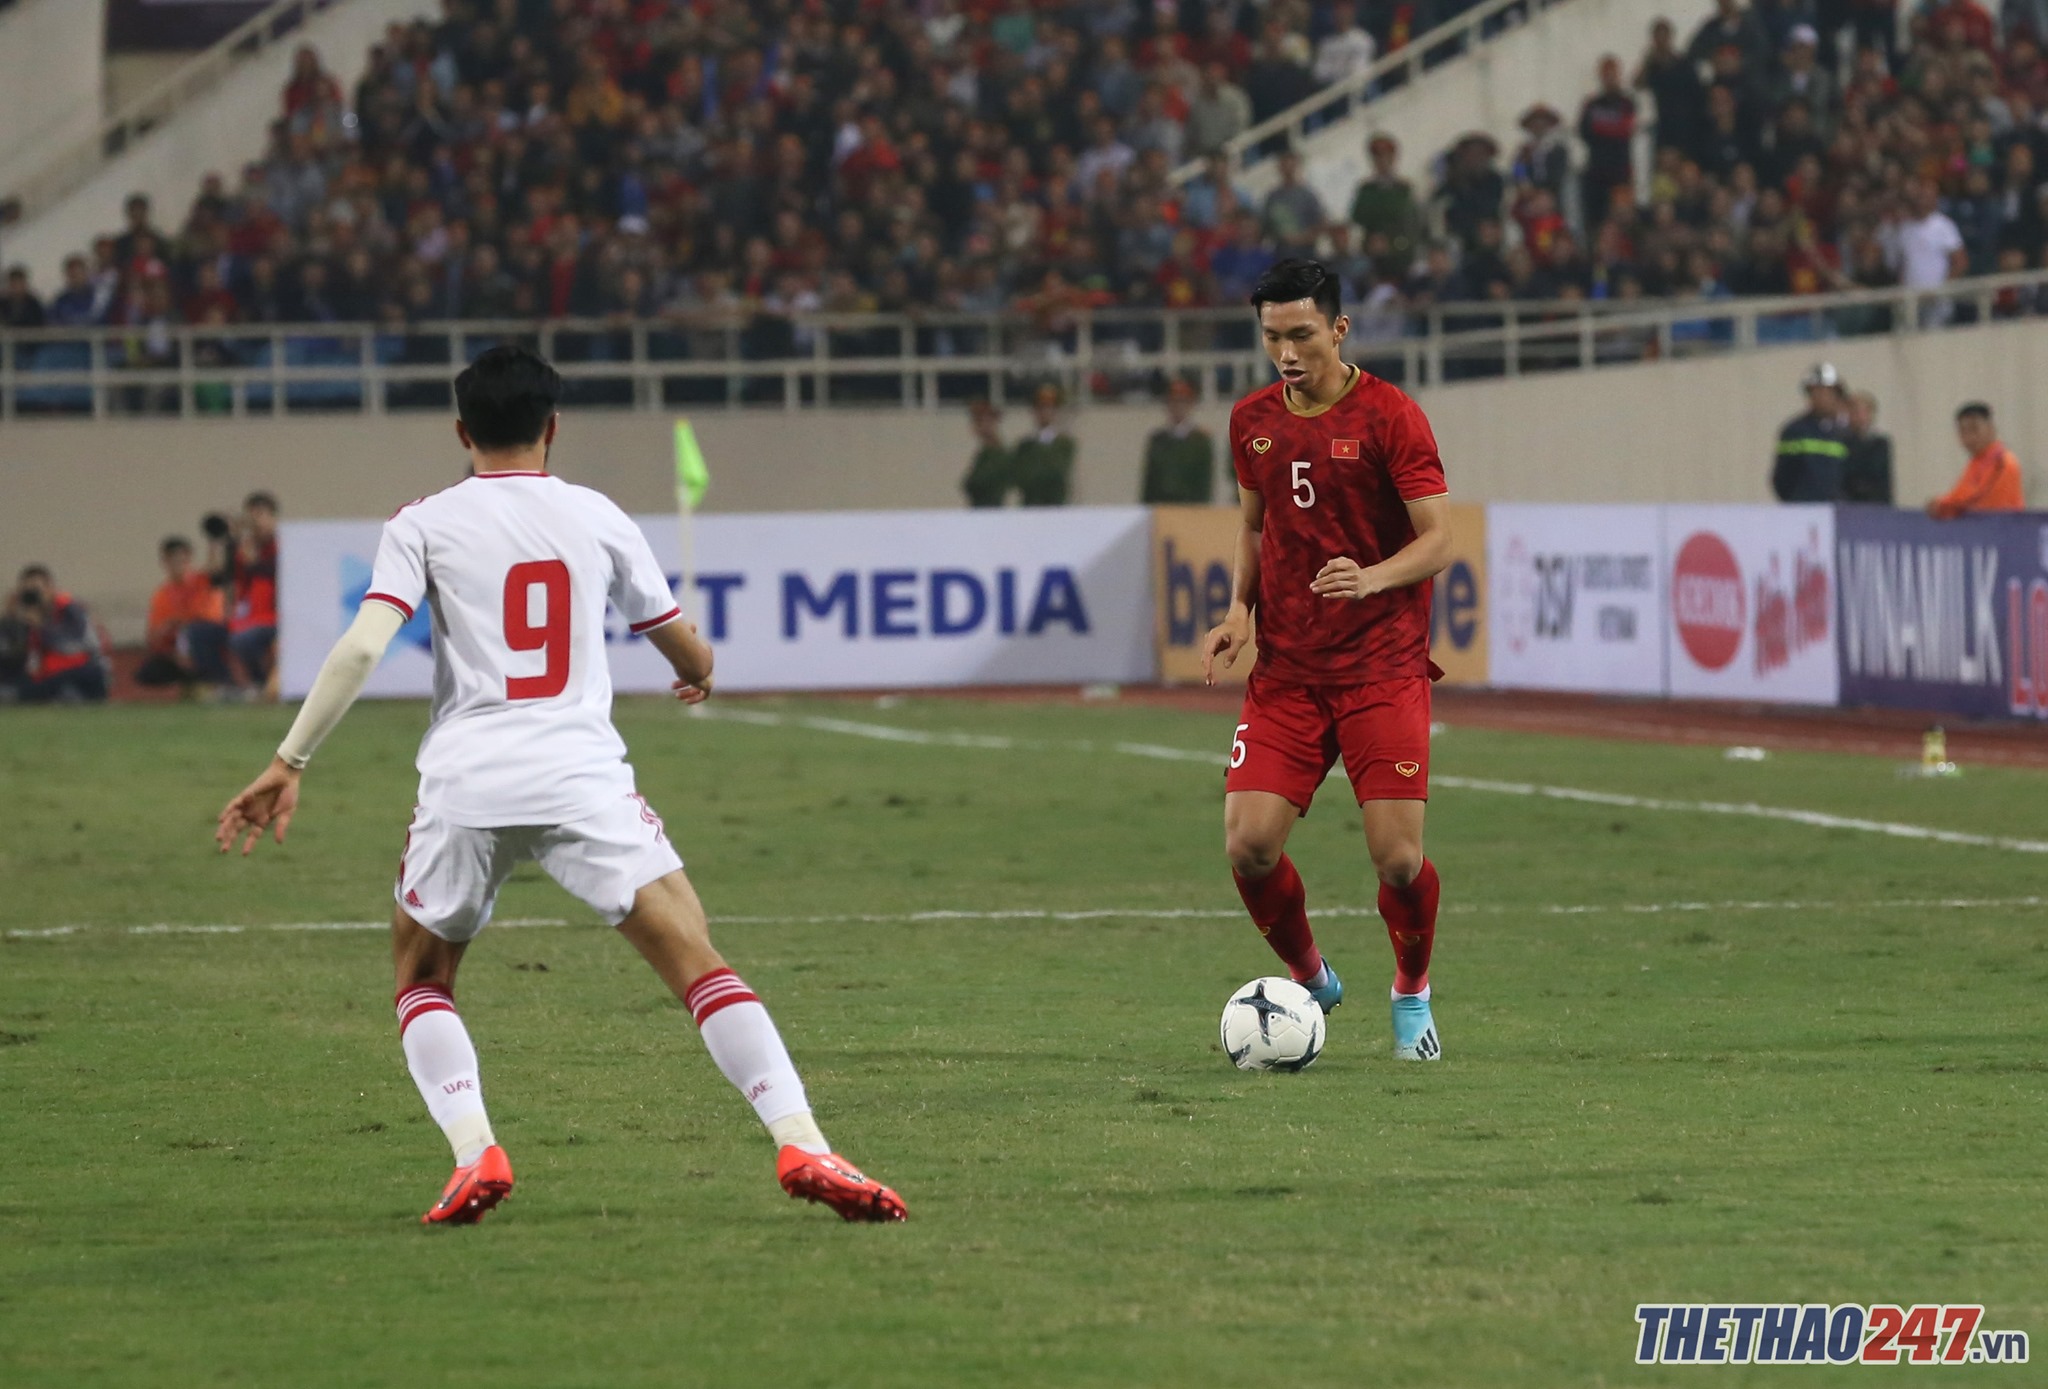 Việt Nam vs UAE, đoàn văn hậu, vòng loại world cup 2022, bảng g vl wc 2022